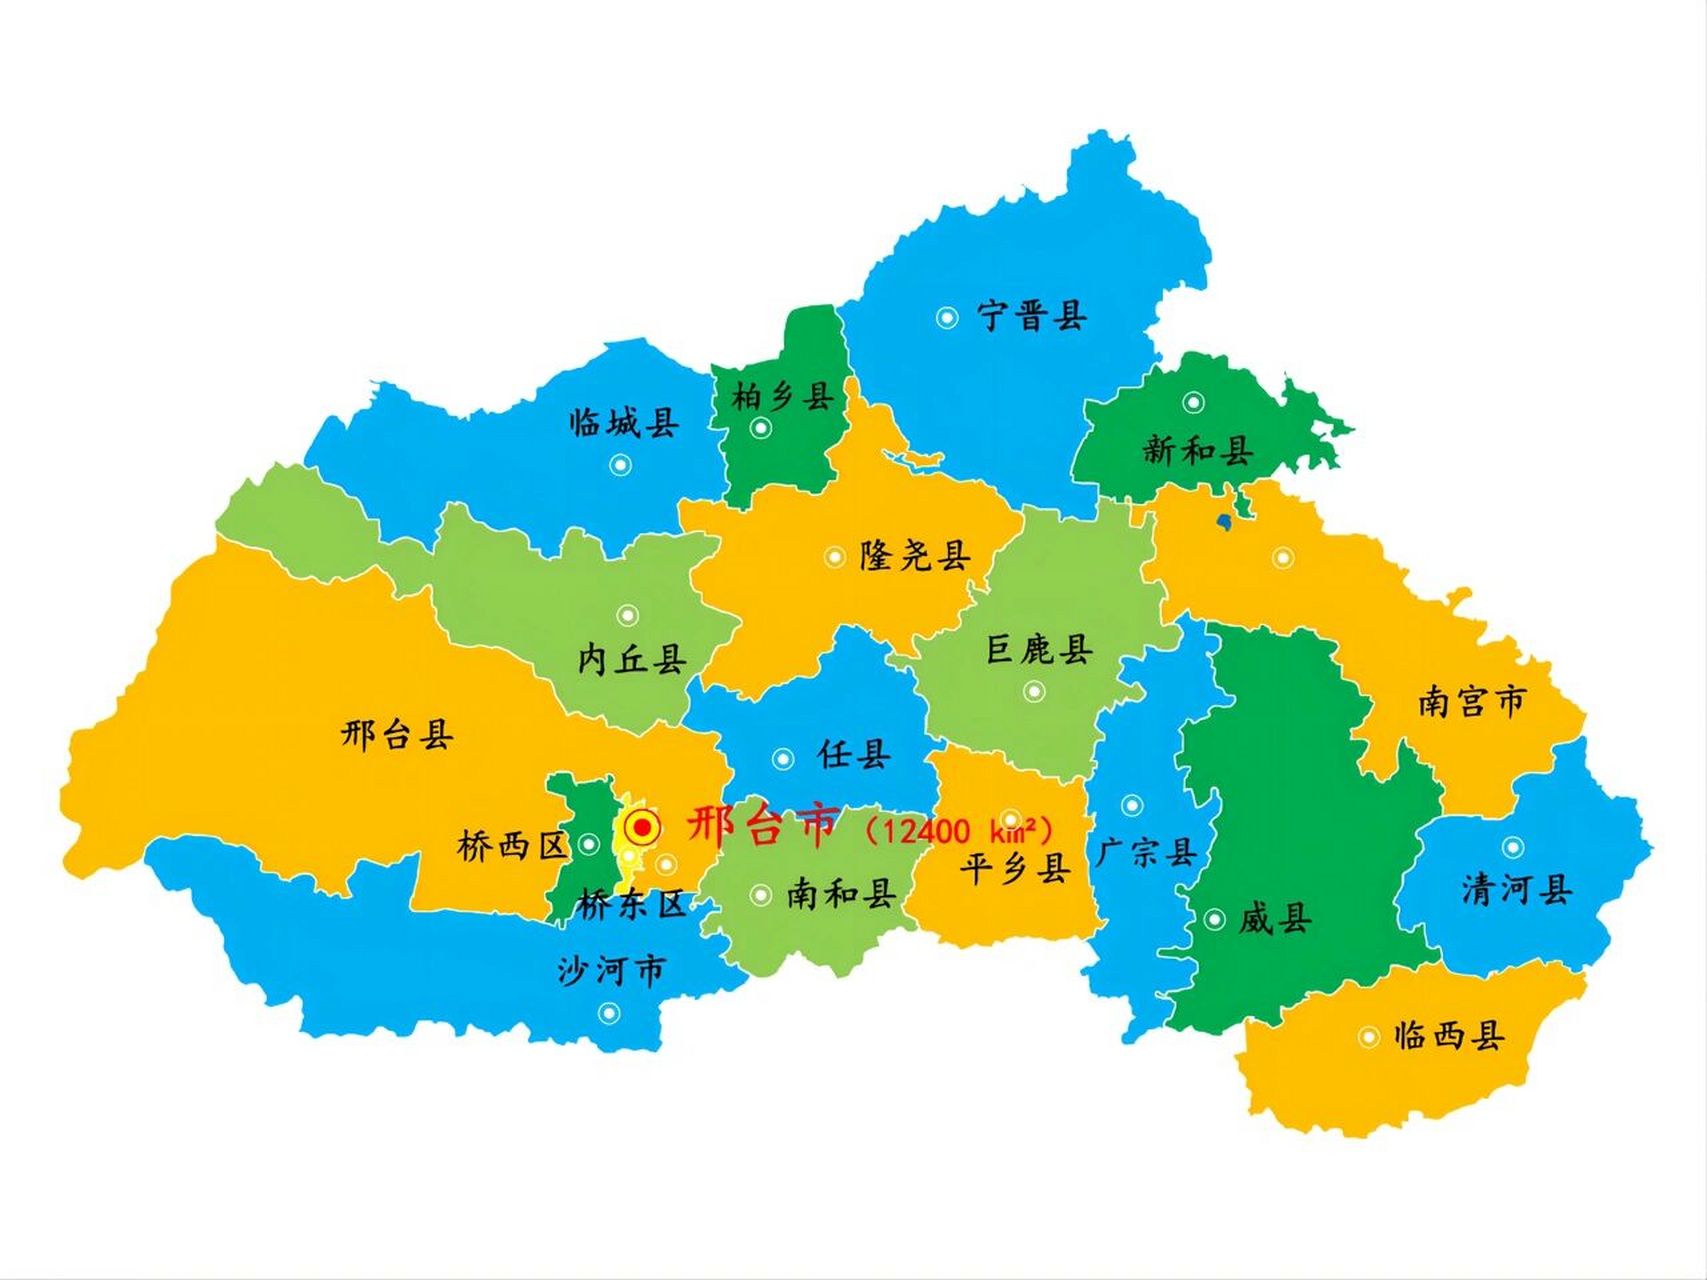 邢台市襄都区明细地图图片